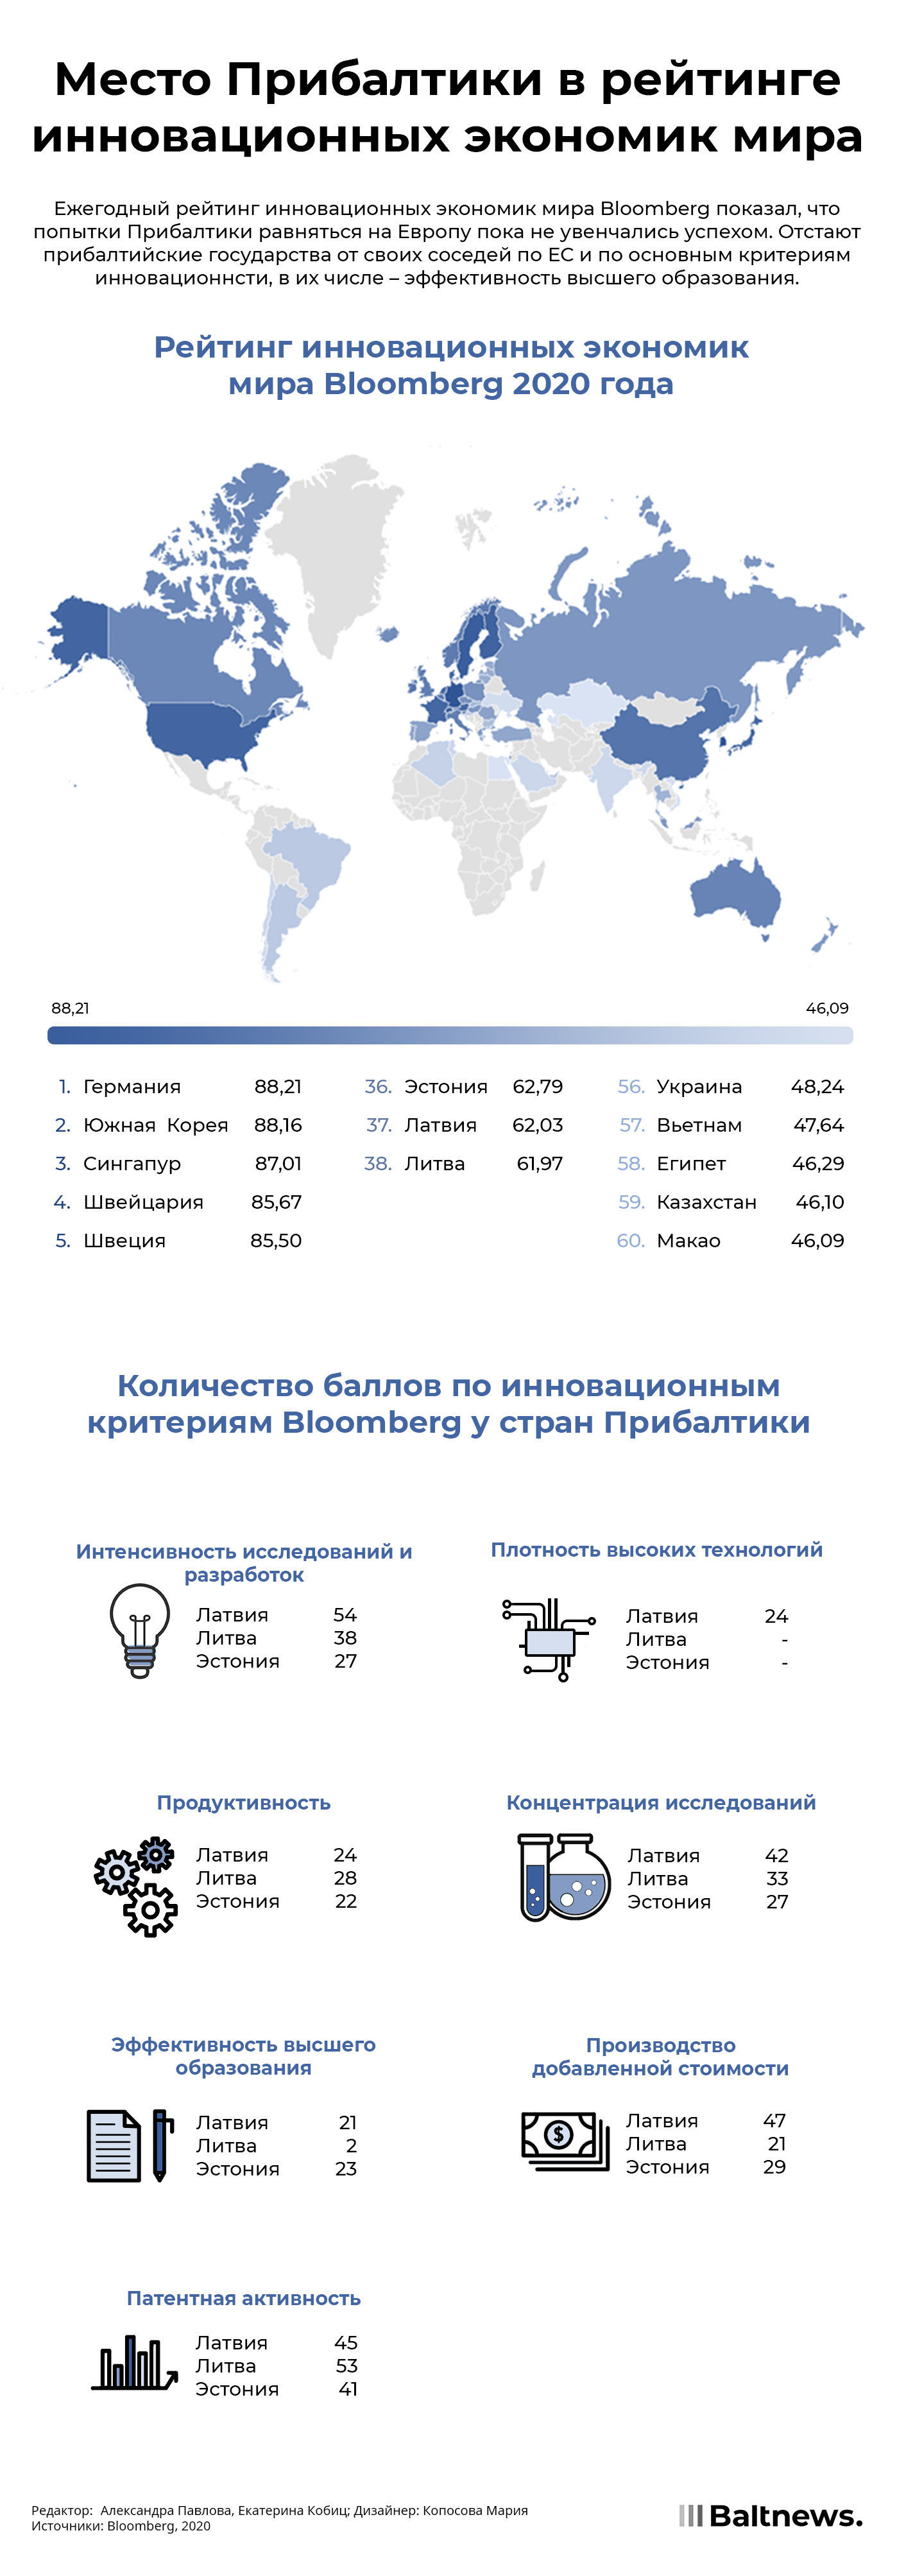 Место Прибалтики в рейтинге инновационных экономик мира